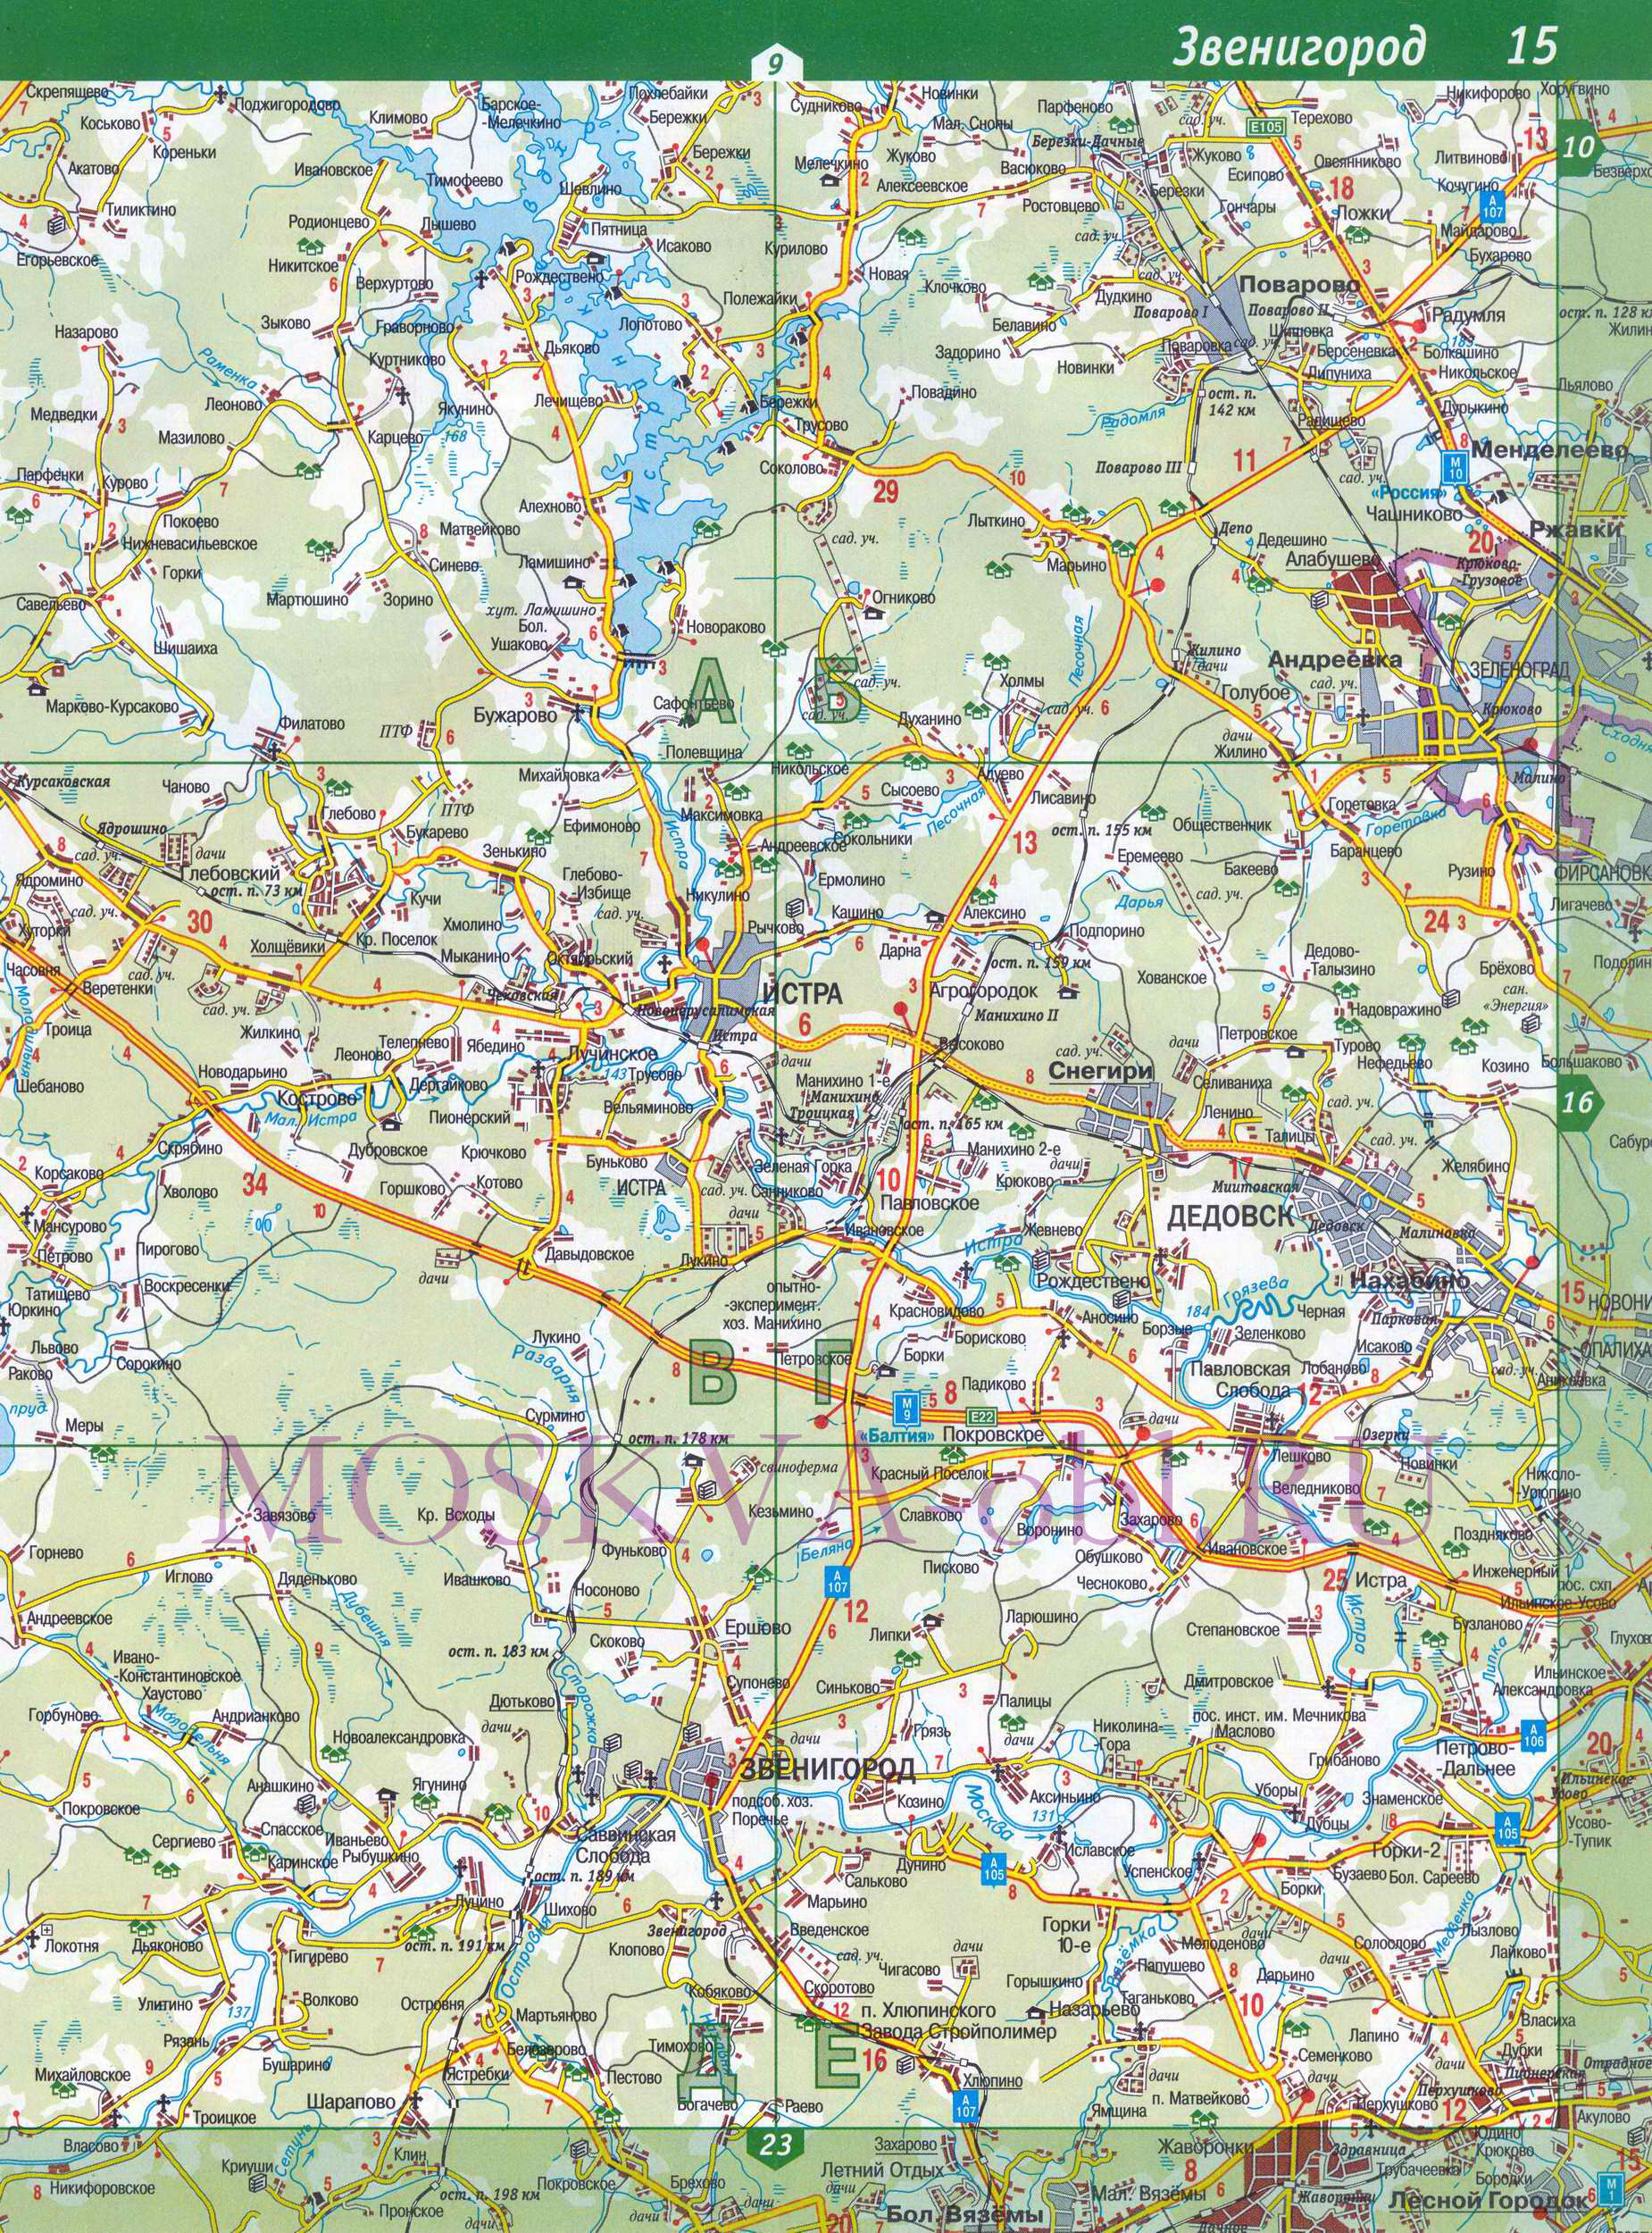 Истринский район. Карта Истринского района Московской области, B0 - 